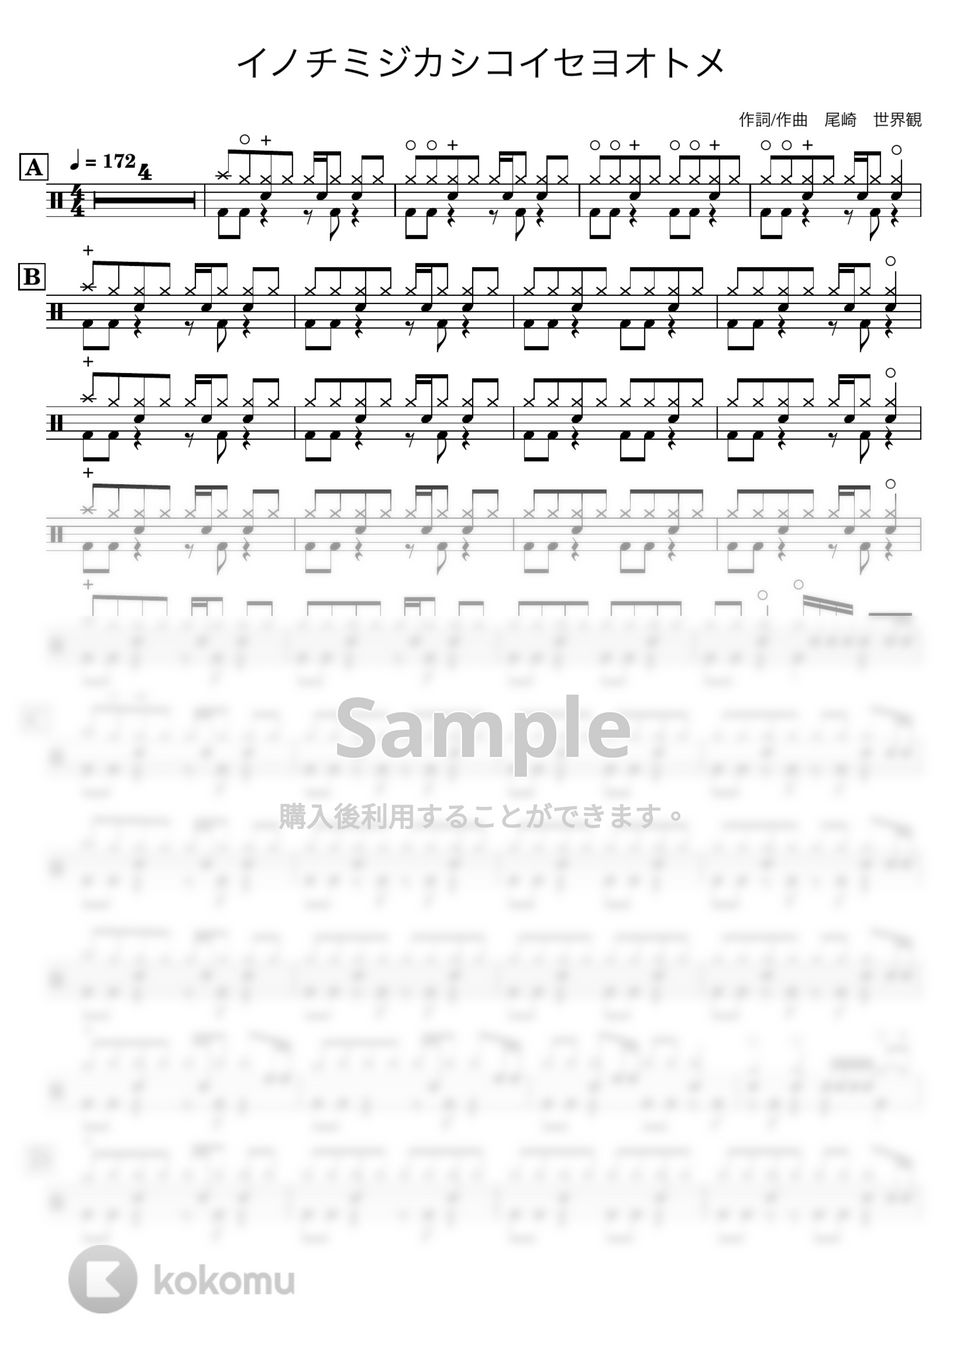 クリープハイプ - 【ドラム譜】イノチミジカシコイセヨオトメ【完コピ】 by Taiki Mizumoto